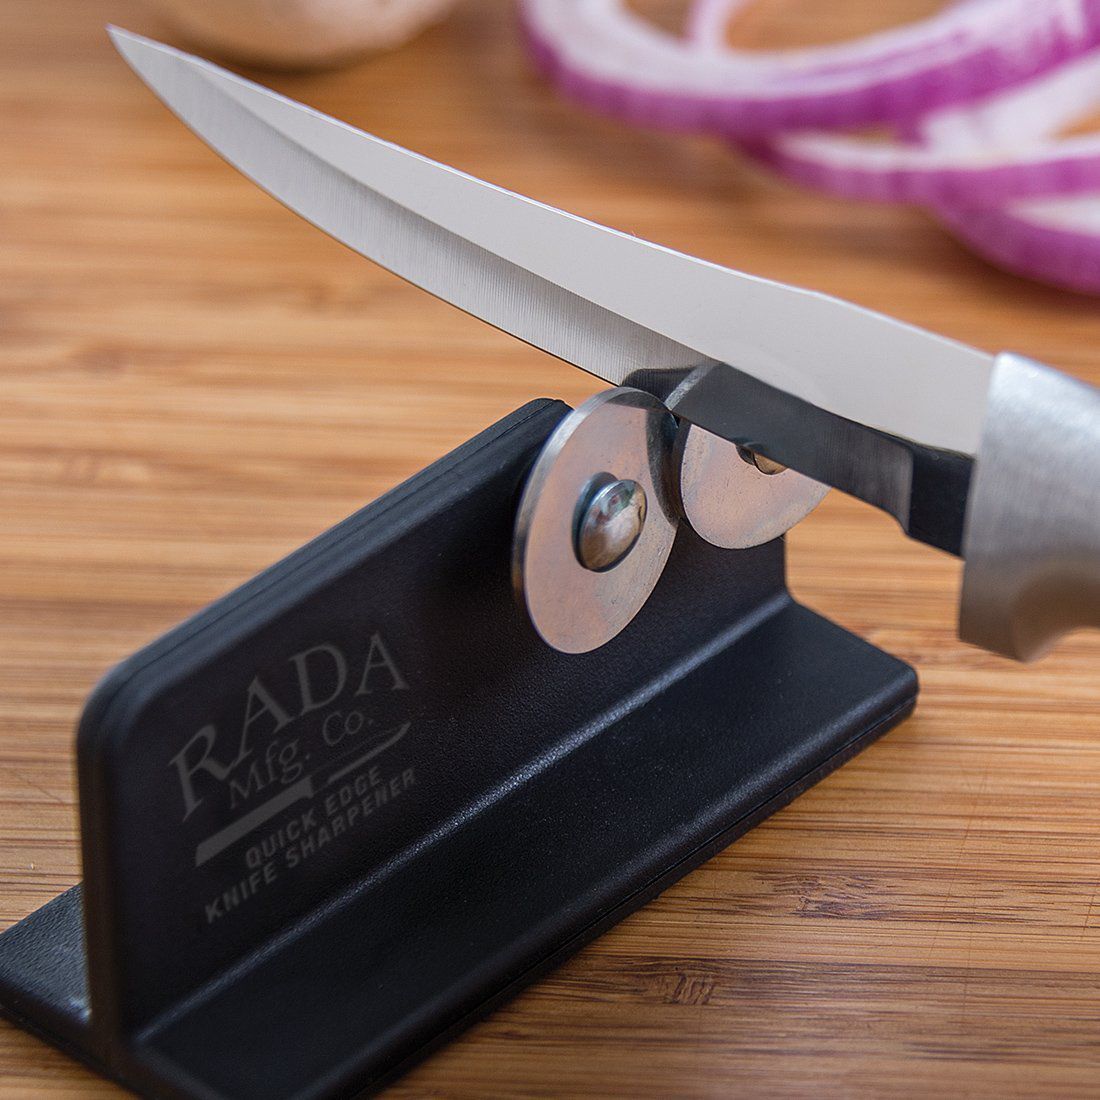 Best Knife Sharpener Reviews, Best Sharpening Stone